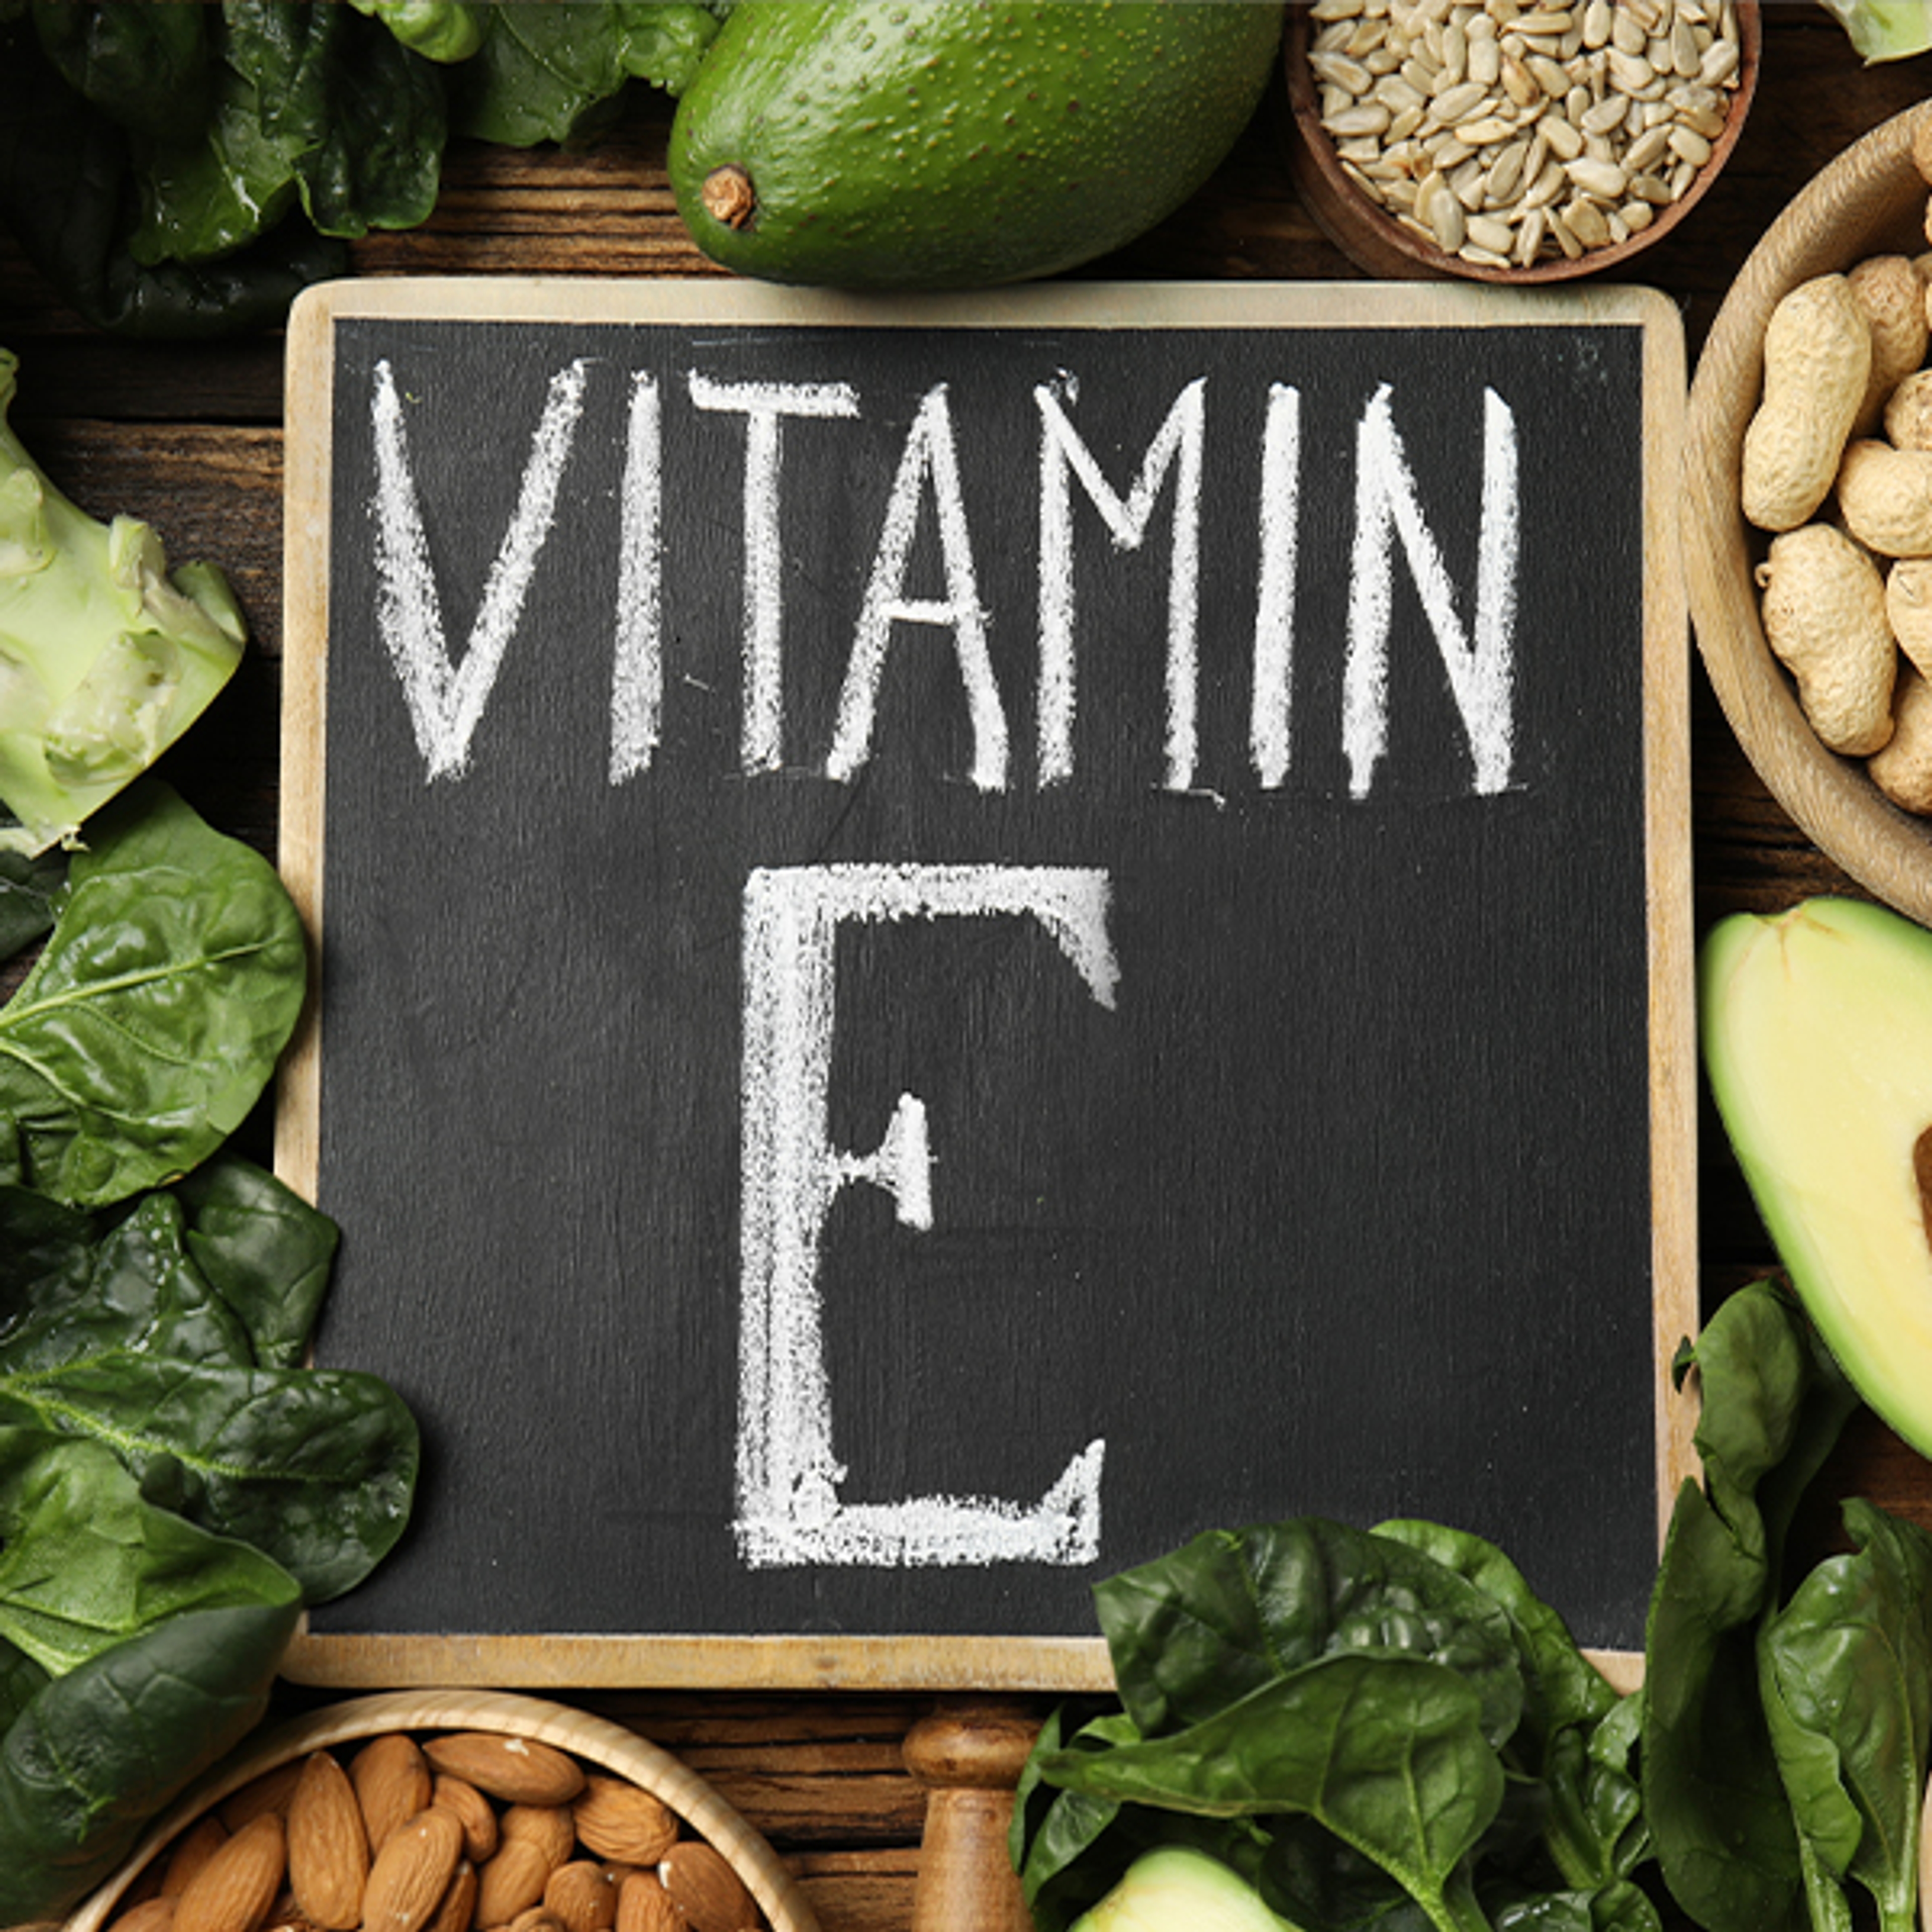 La vitamine E - la fontaine de jouvence de la santé